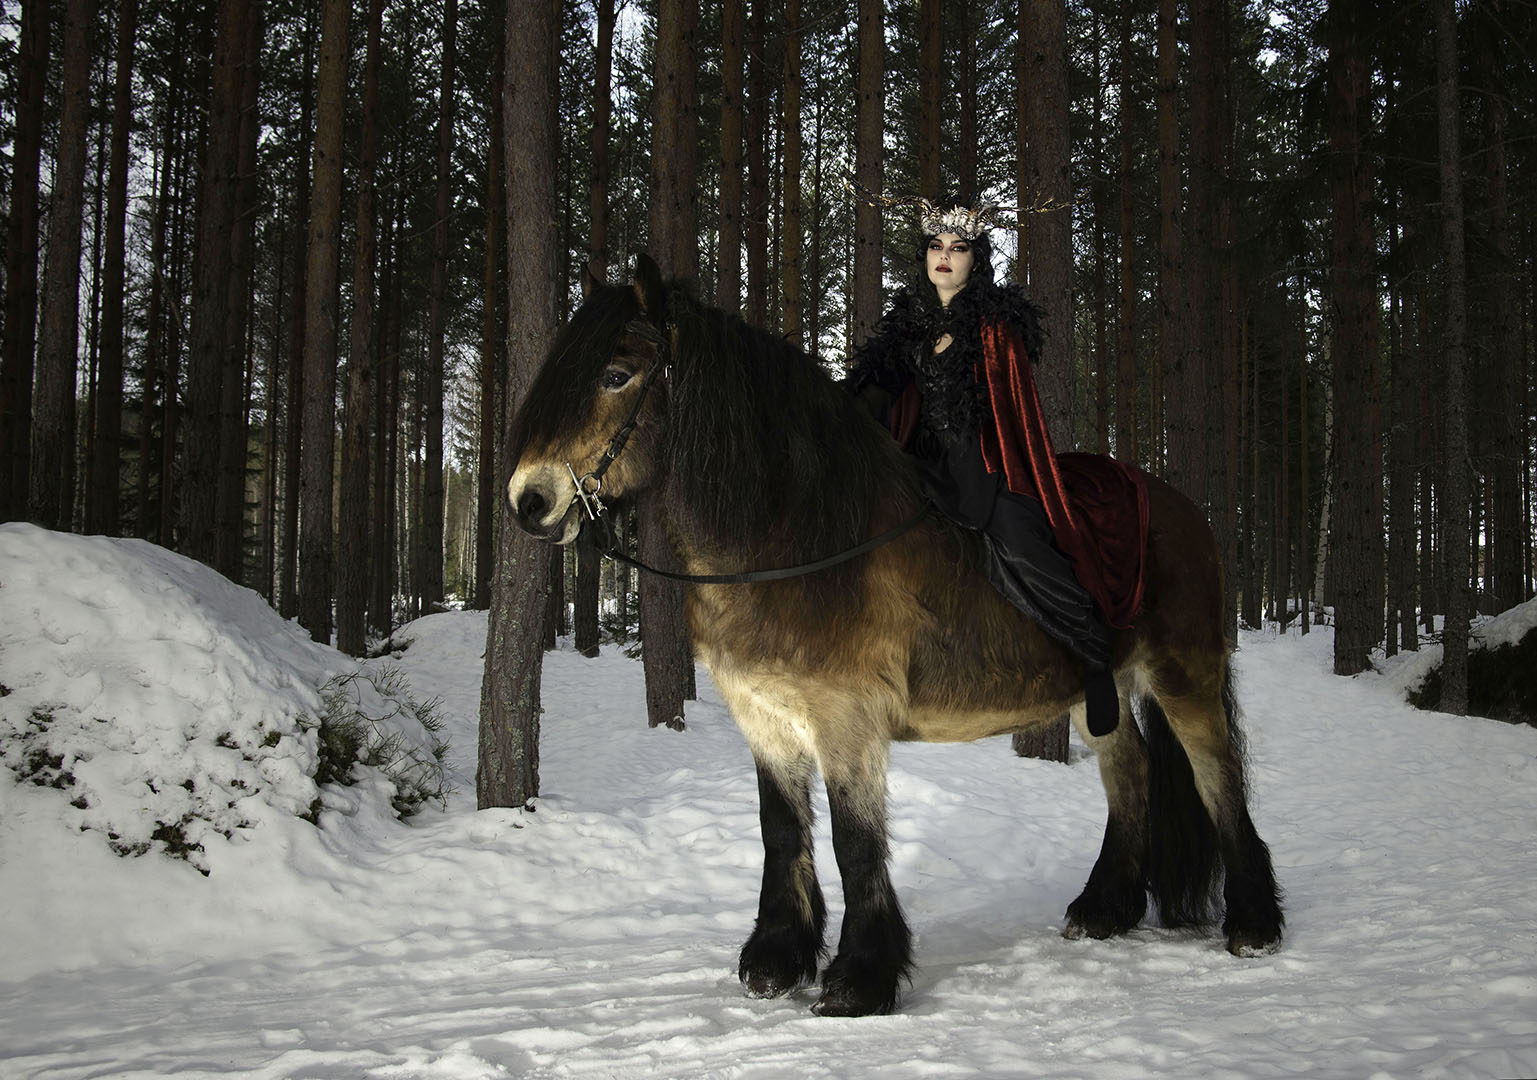 Skogens drottning. Samma kvinna som i de två föregående bilder sitter nu på en nordsvensk brukshäst. En riktig stor, lurvig brun häst. Hästan står på snötäckt mark mot en bakgrund av trädstammar.